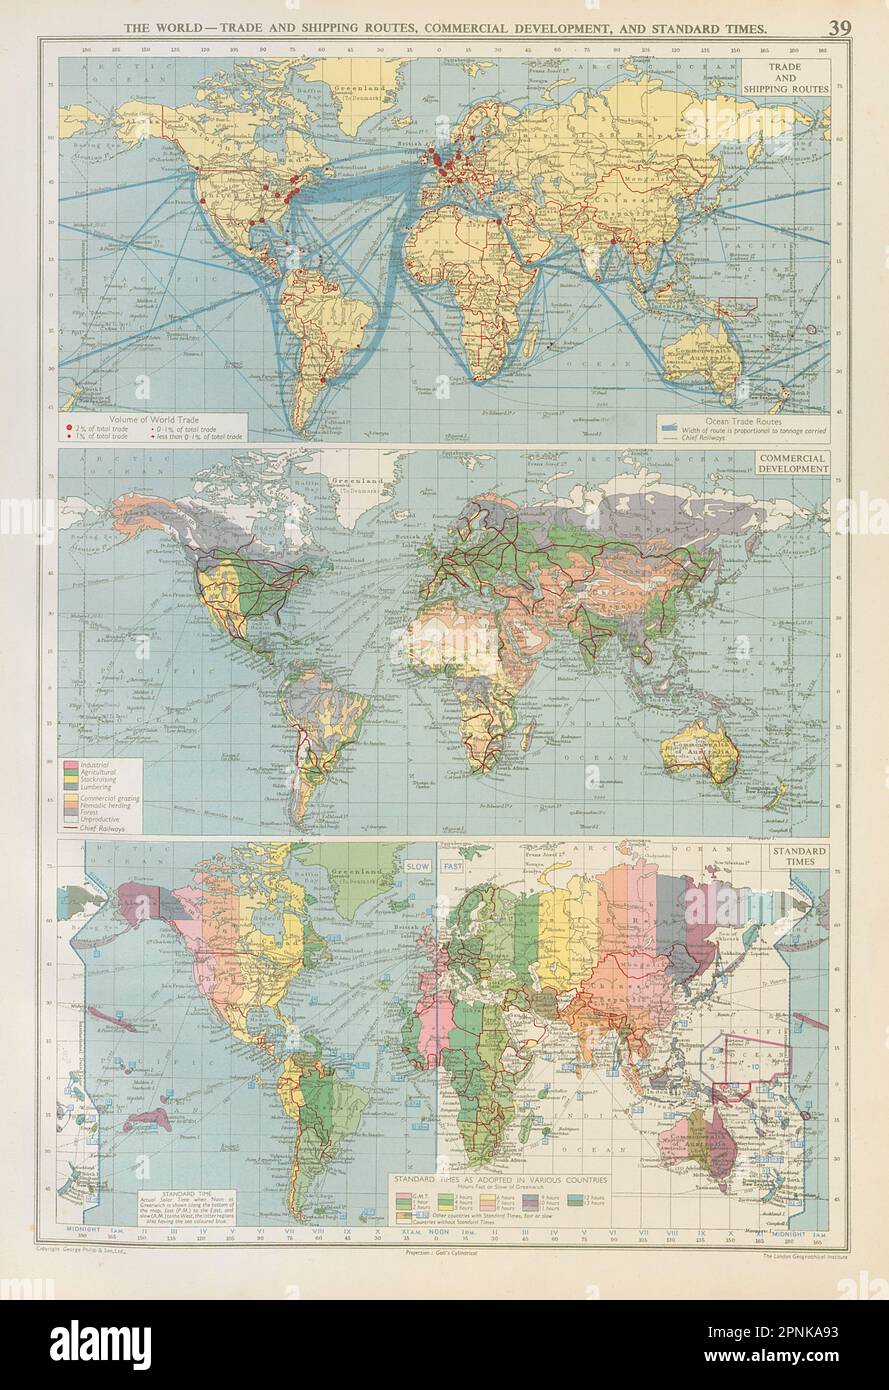 Monde - routes commerciales et maritimes, développement commercial. Carte des horaires standard 1952 Banque D'Images